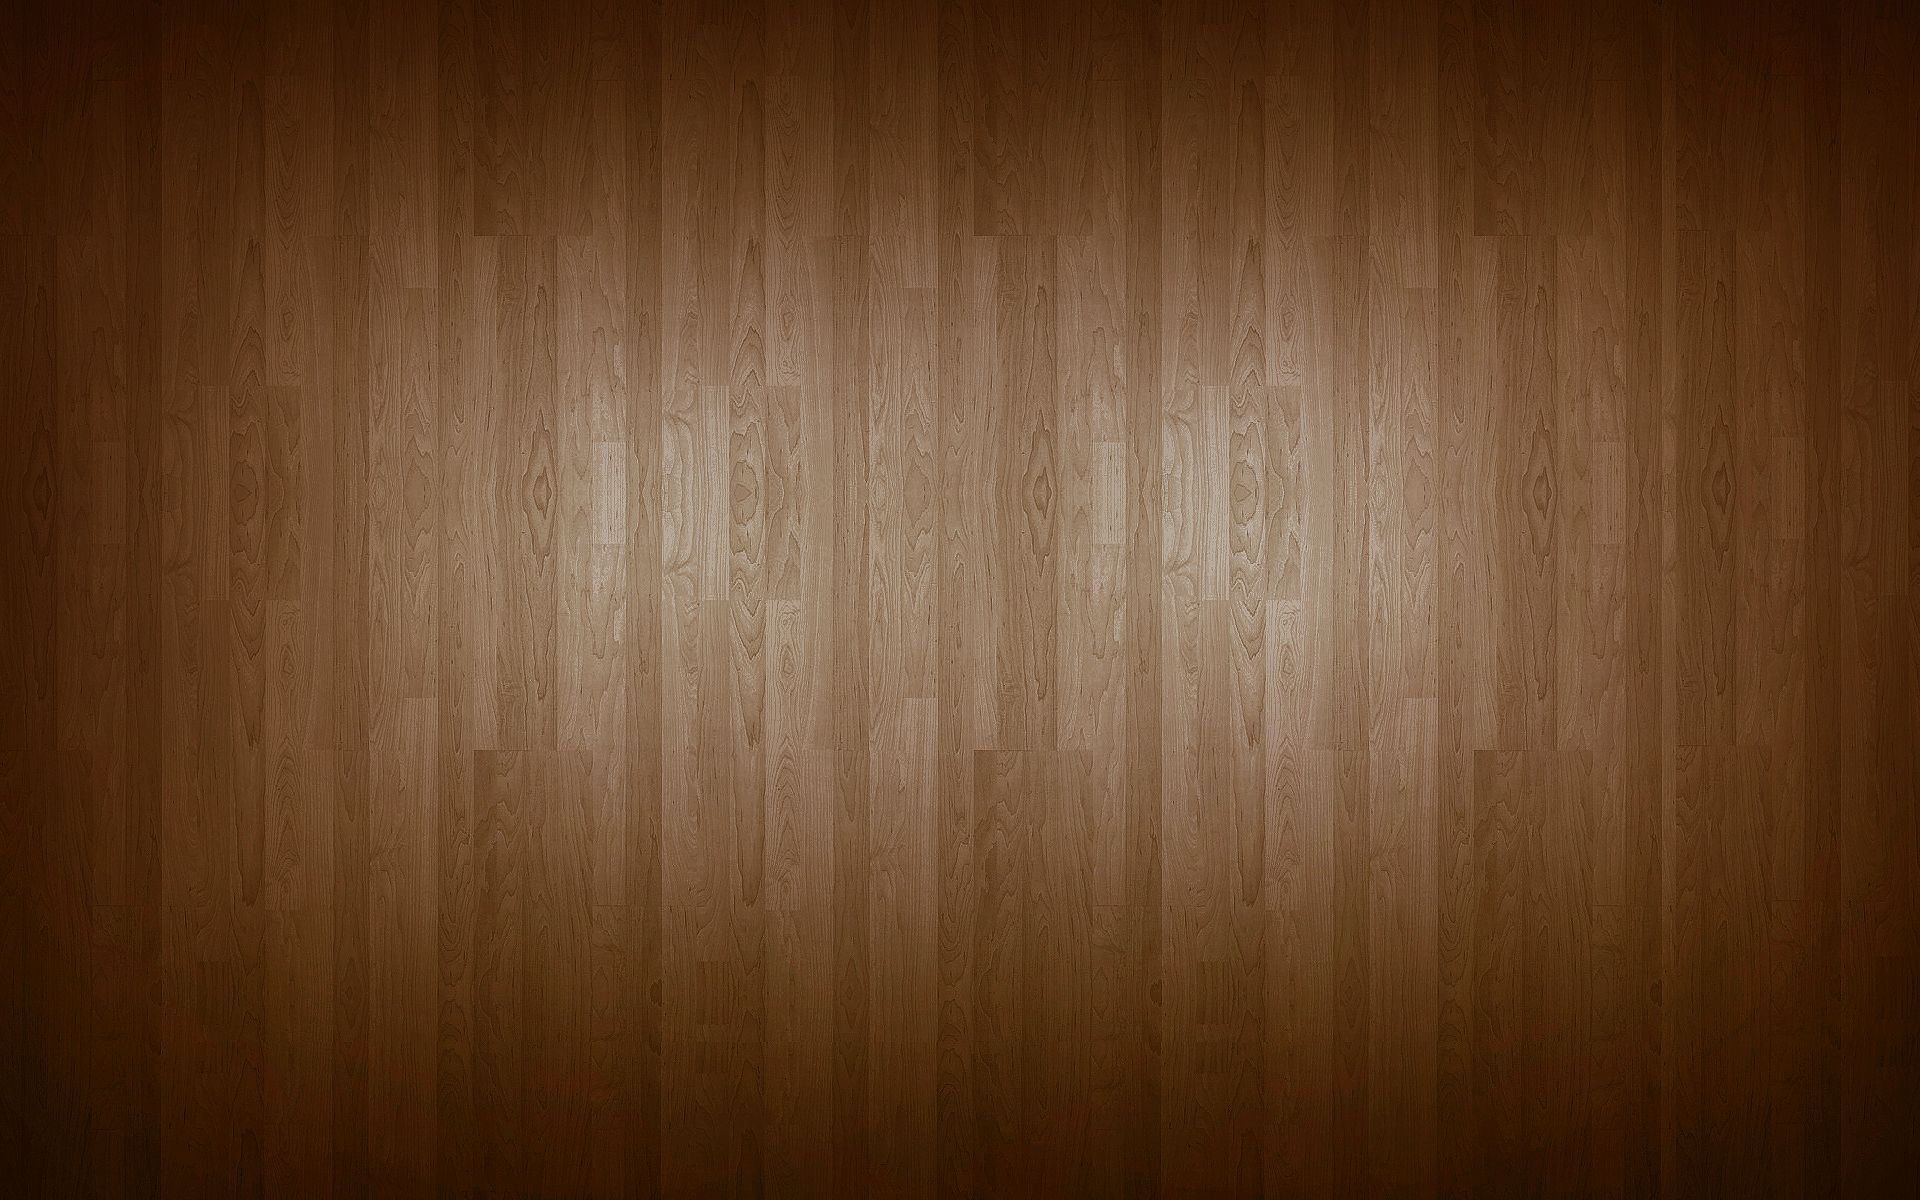 Wood Computer Wallpapers, Desktop Backgrounds | 1920x1200 | ID:74087